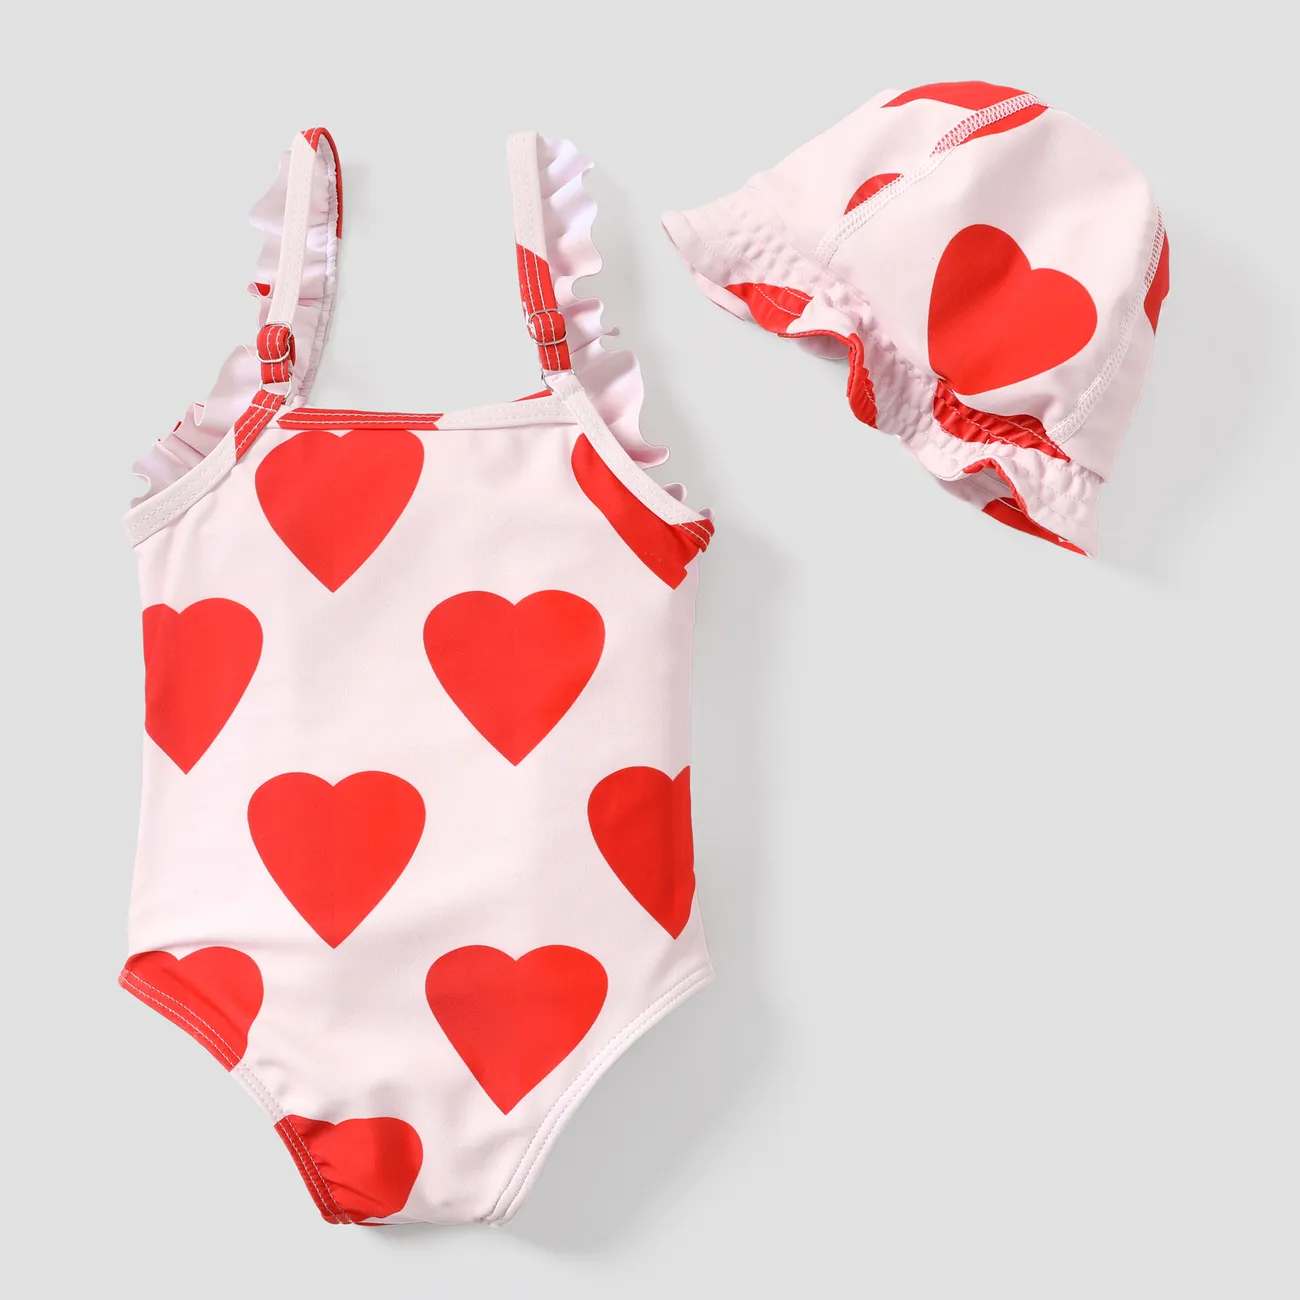 2-teiliges Baby-/Kleinkind-Set mit süßen herzförmigen gerüschten Badeanzügen rot big image 1